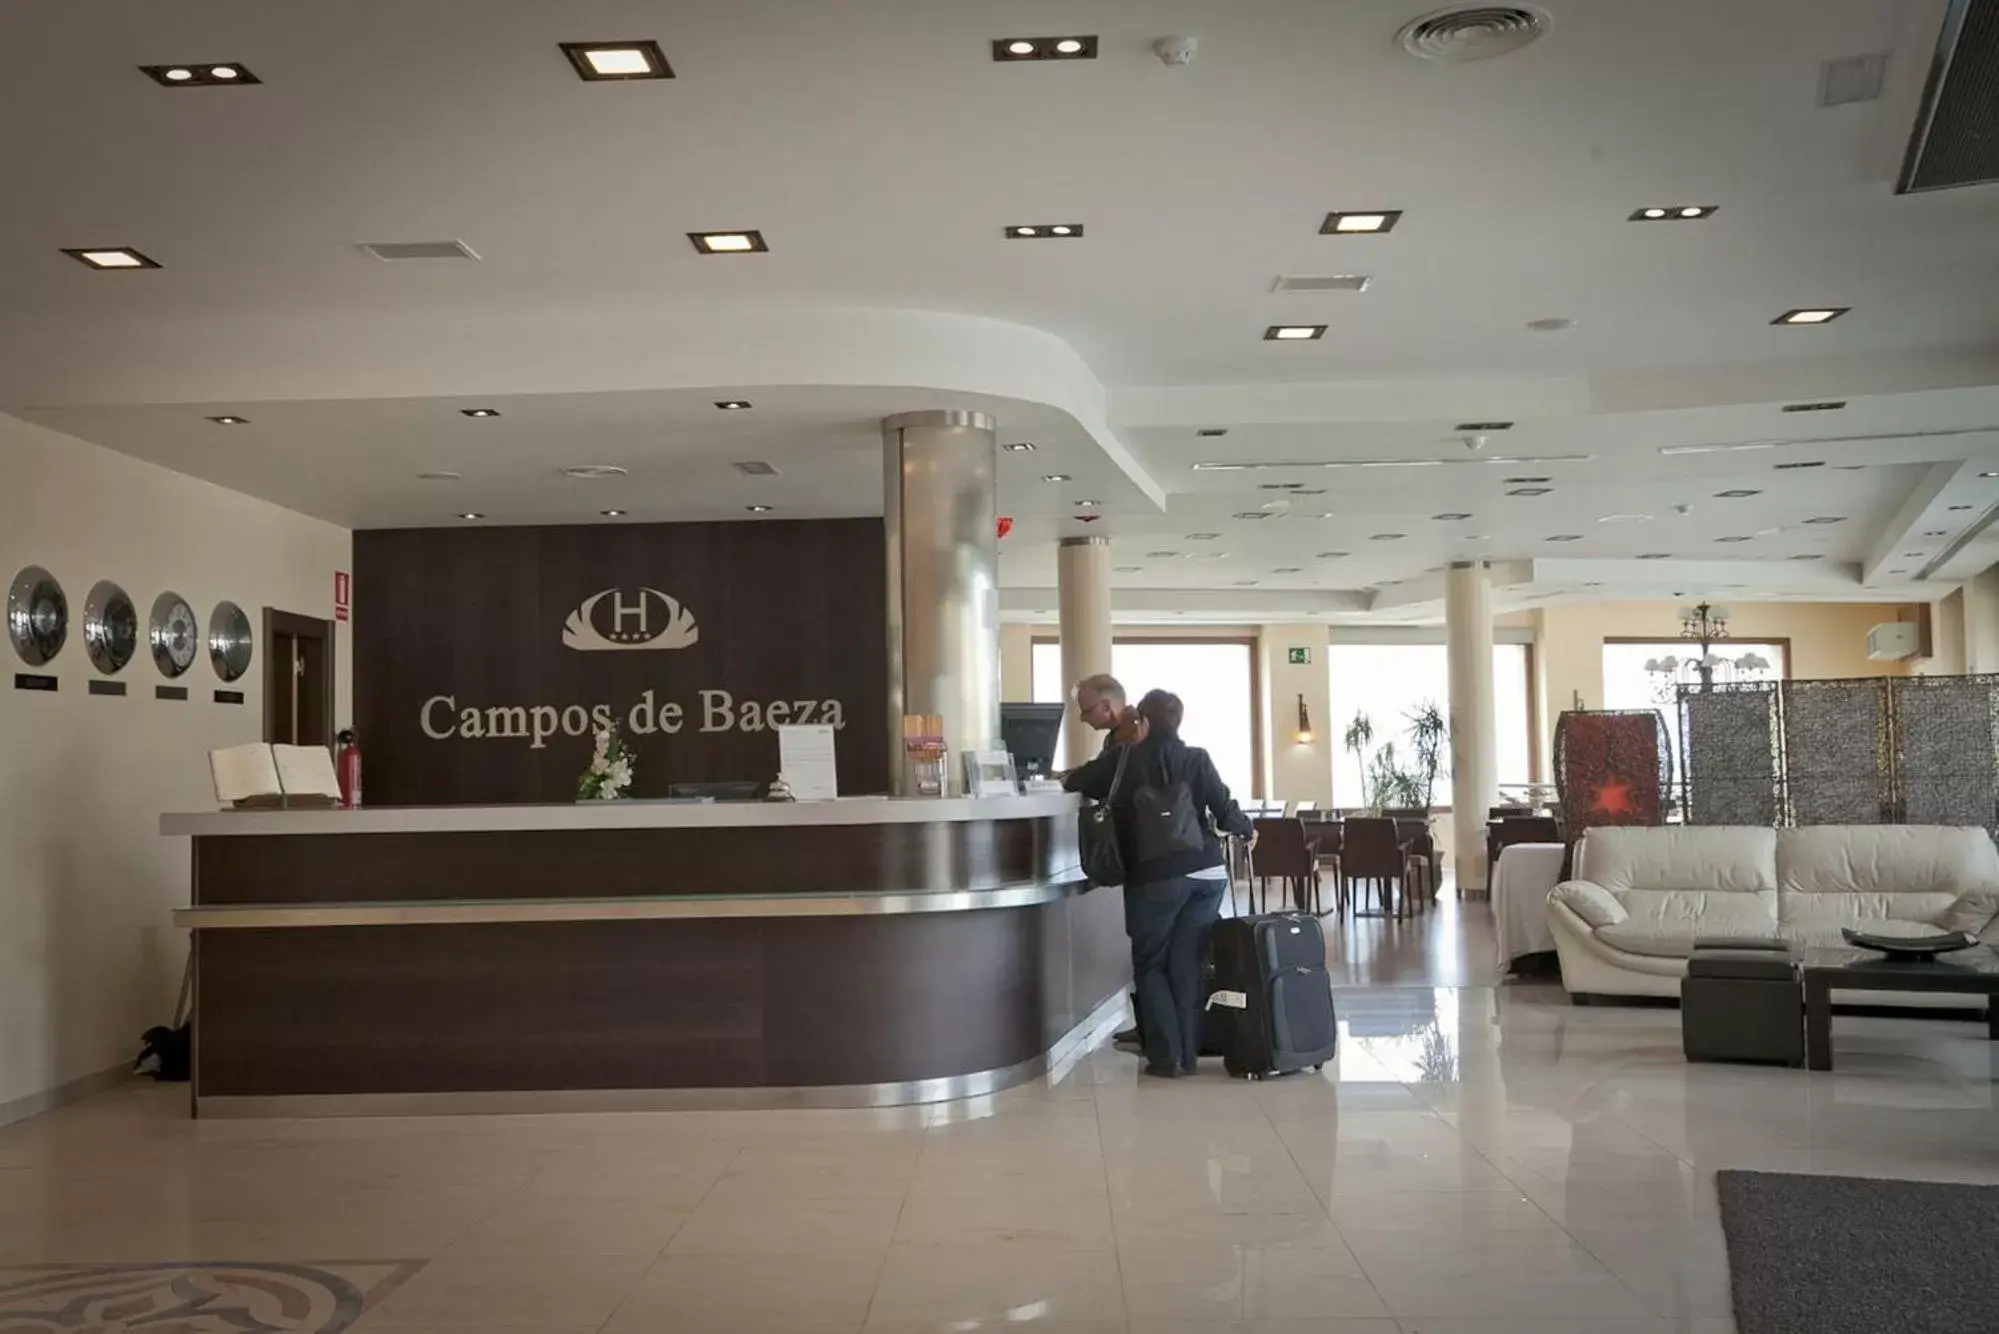 Staff in Hotel Campos de Baeza